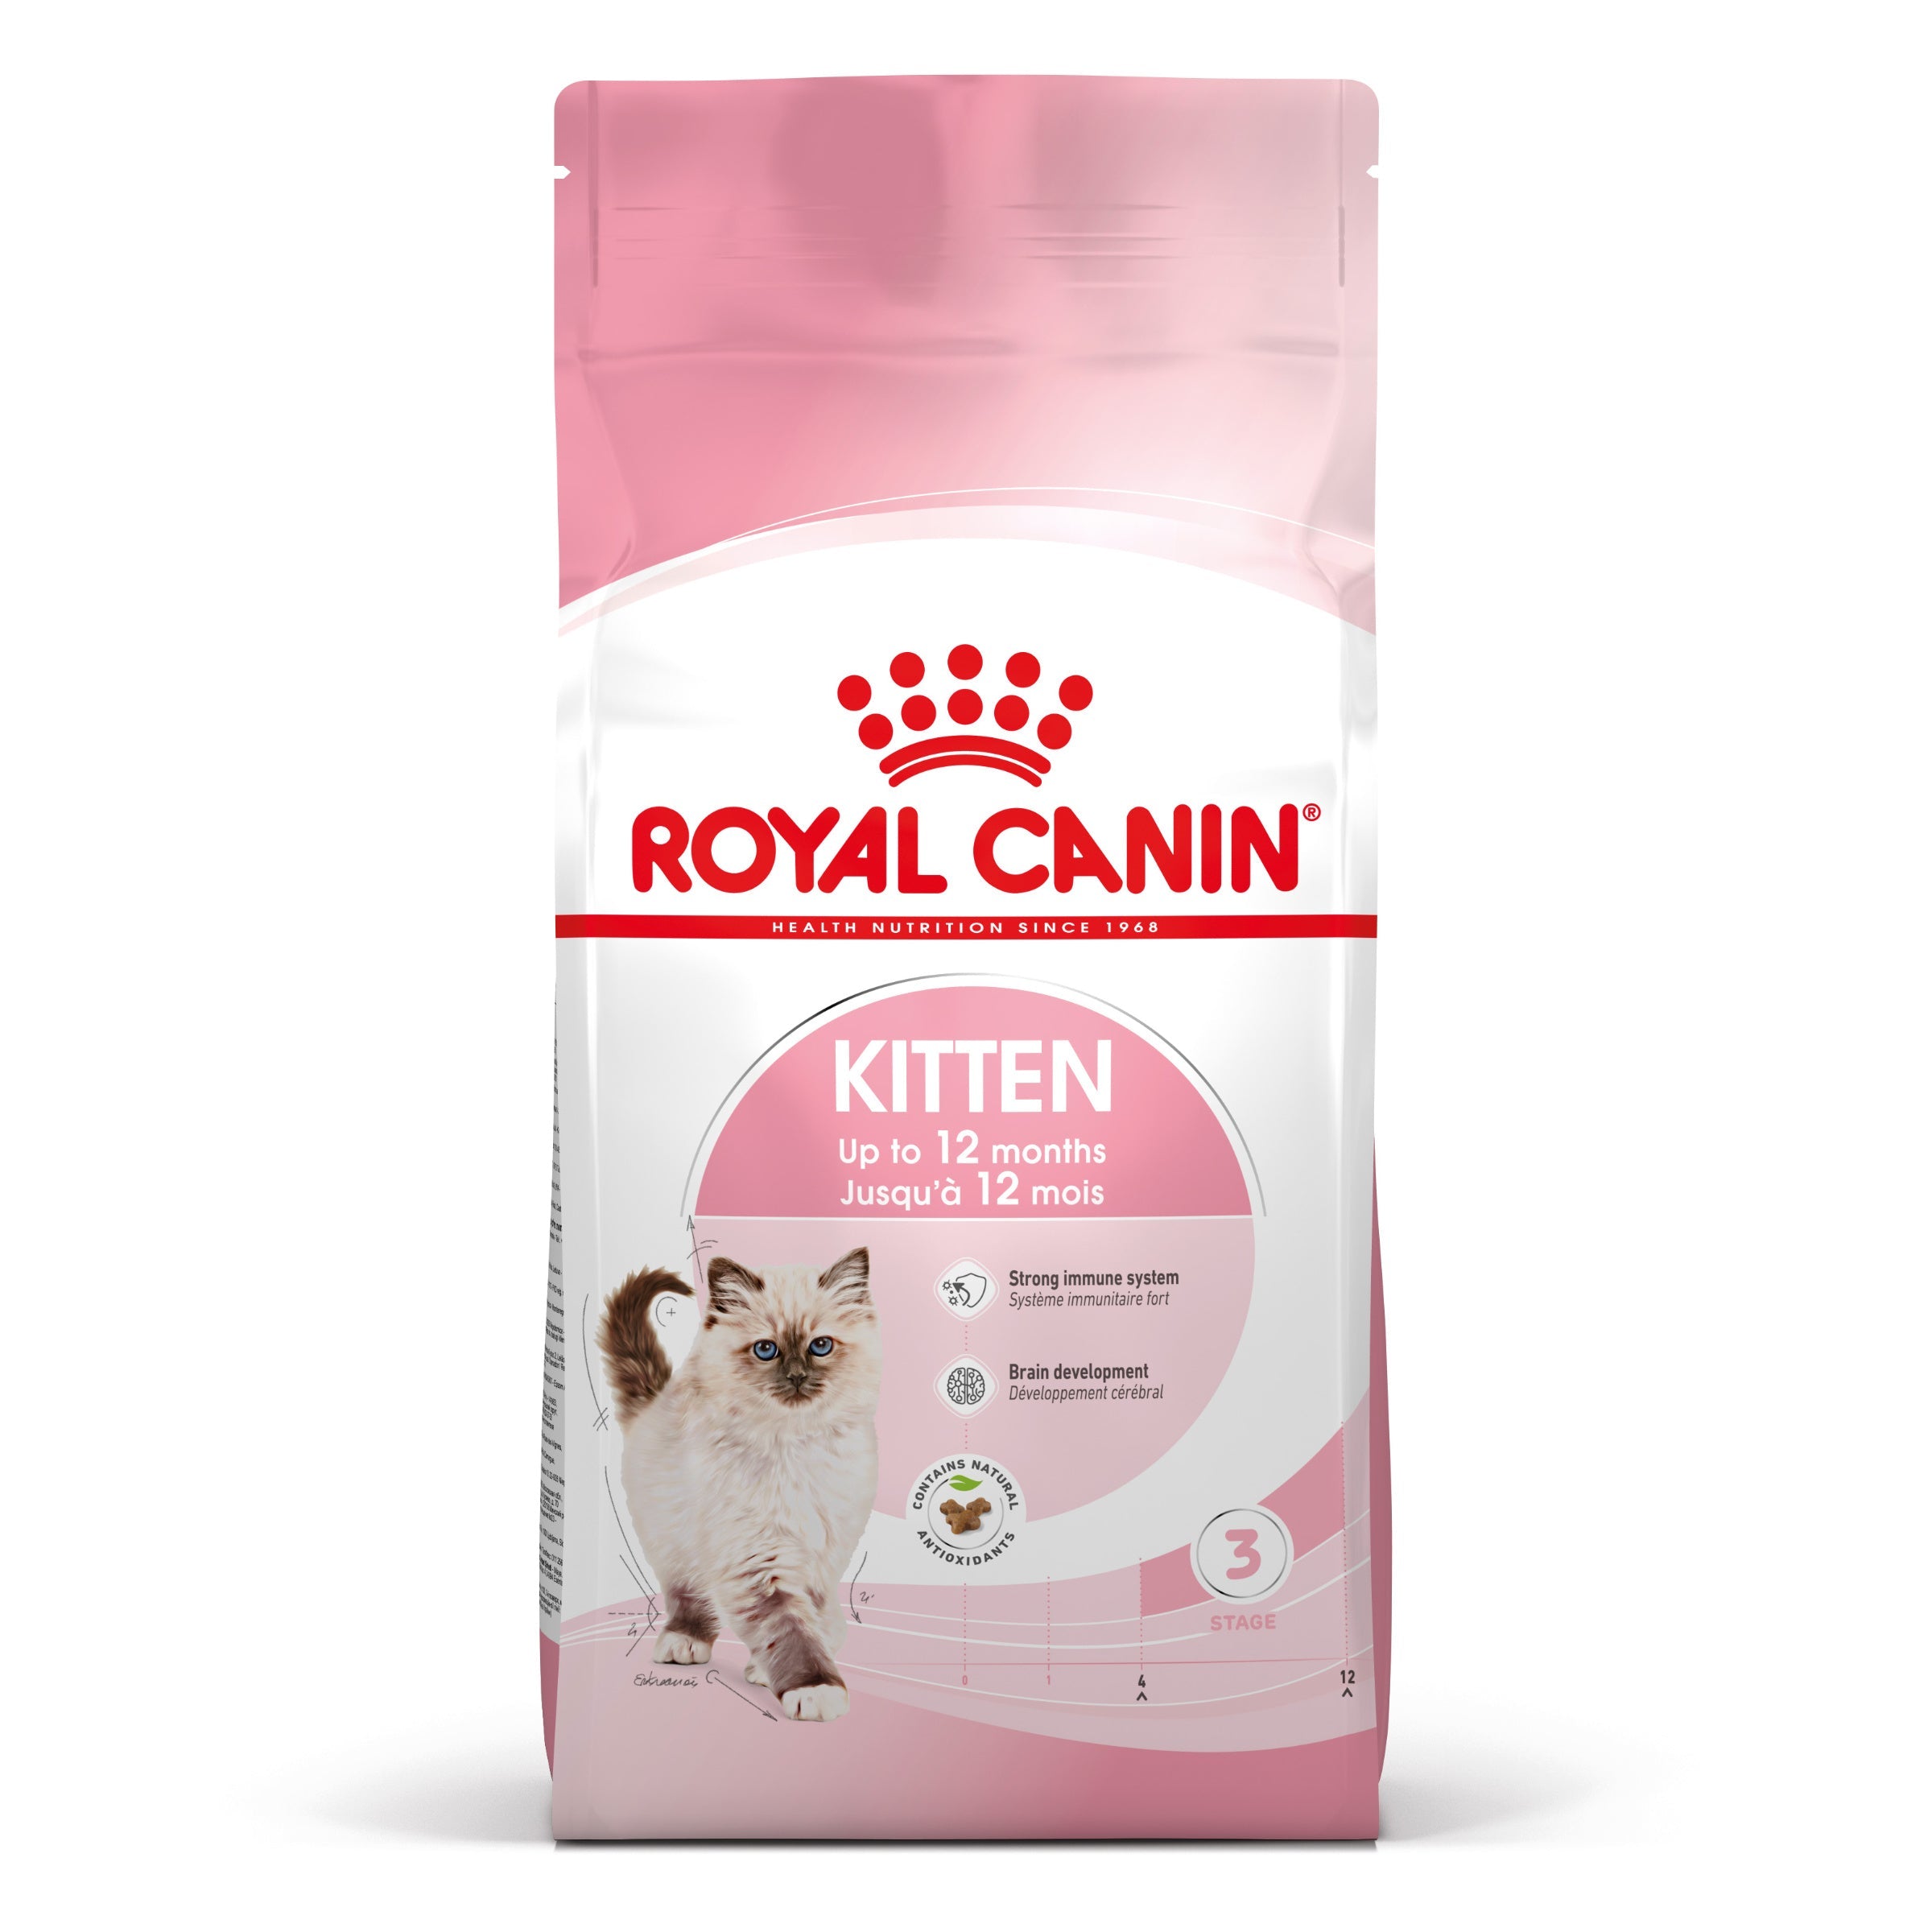 Billede af Royal canin - Royal Canin Kitten Tørfoder til killing 400g - Cat Food